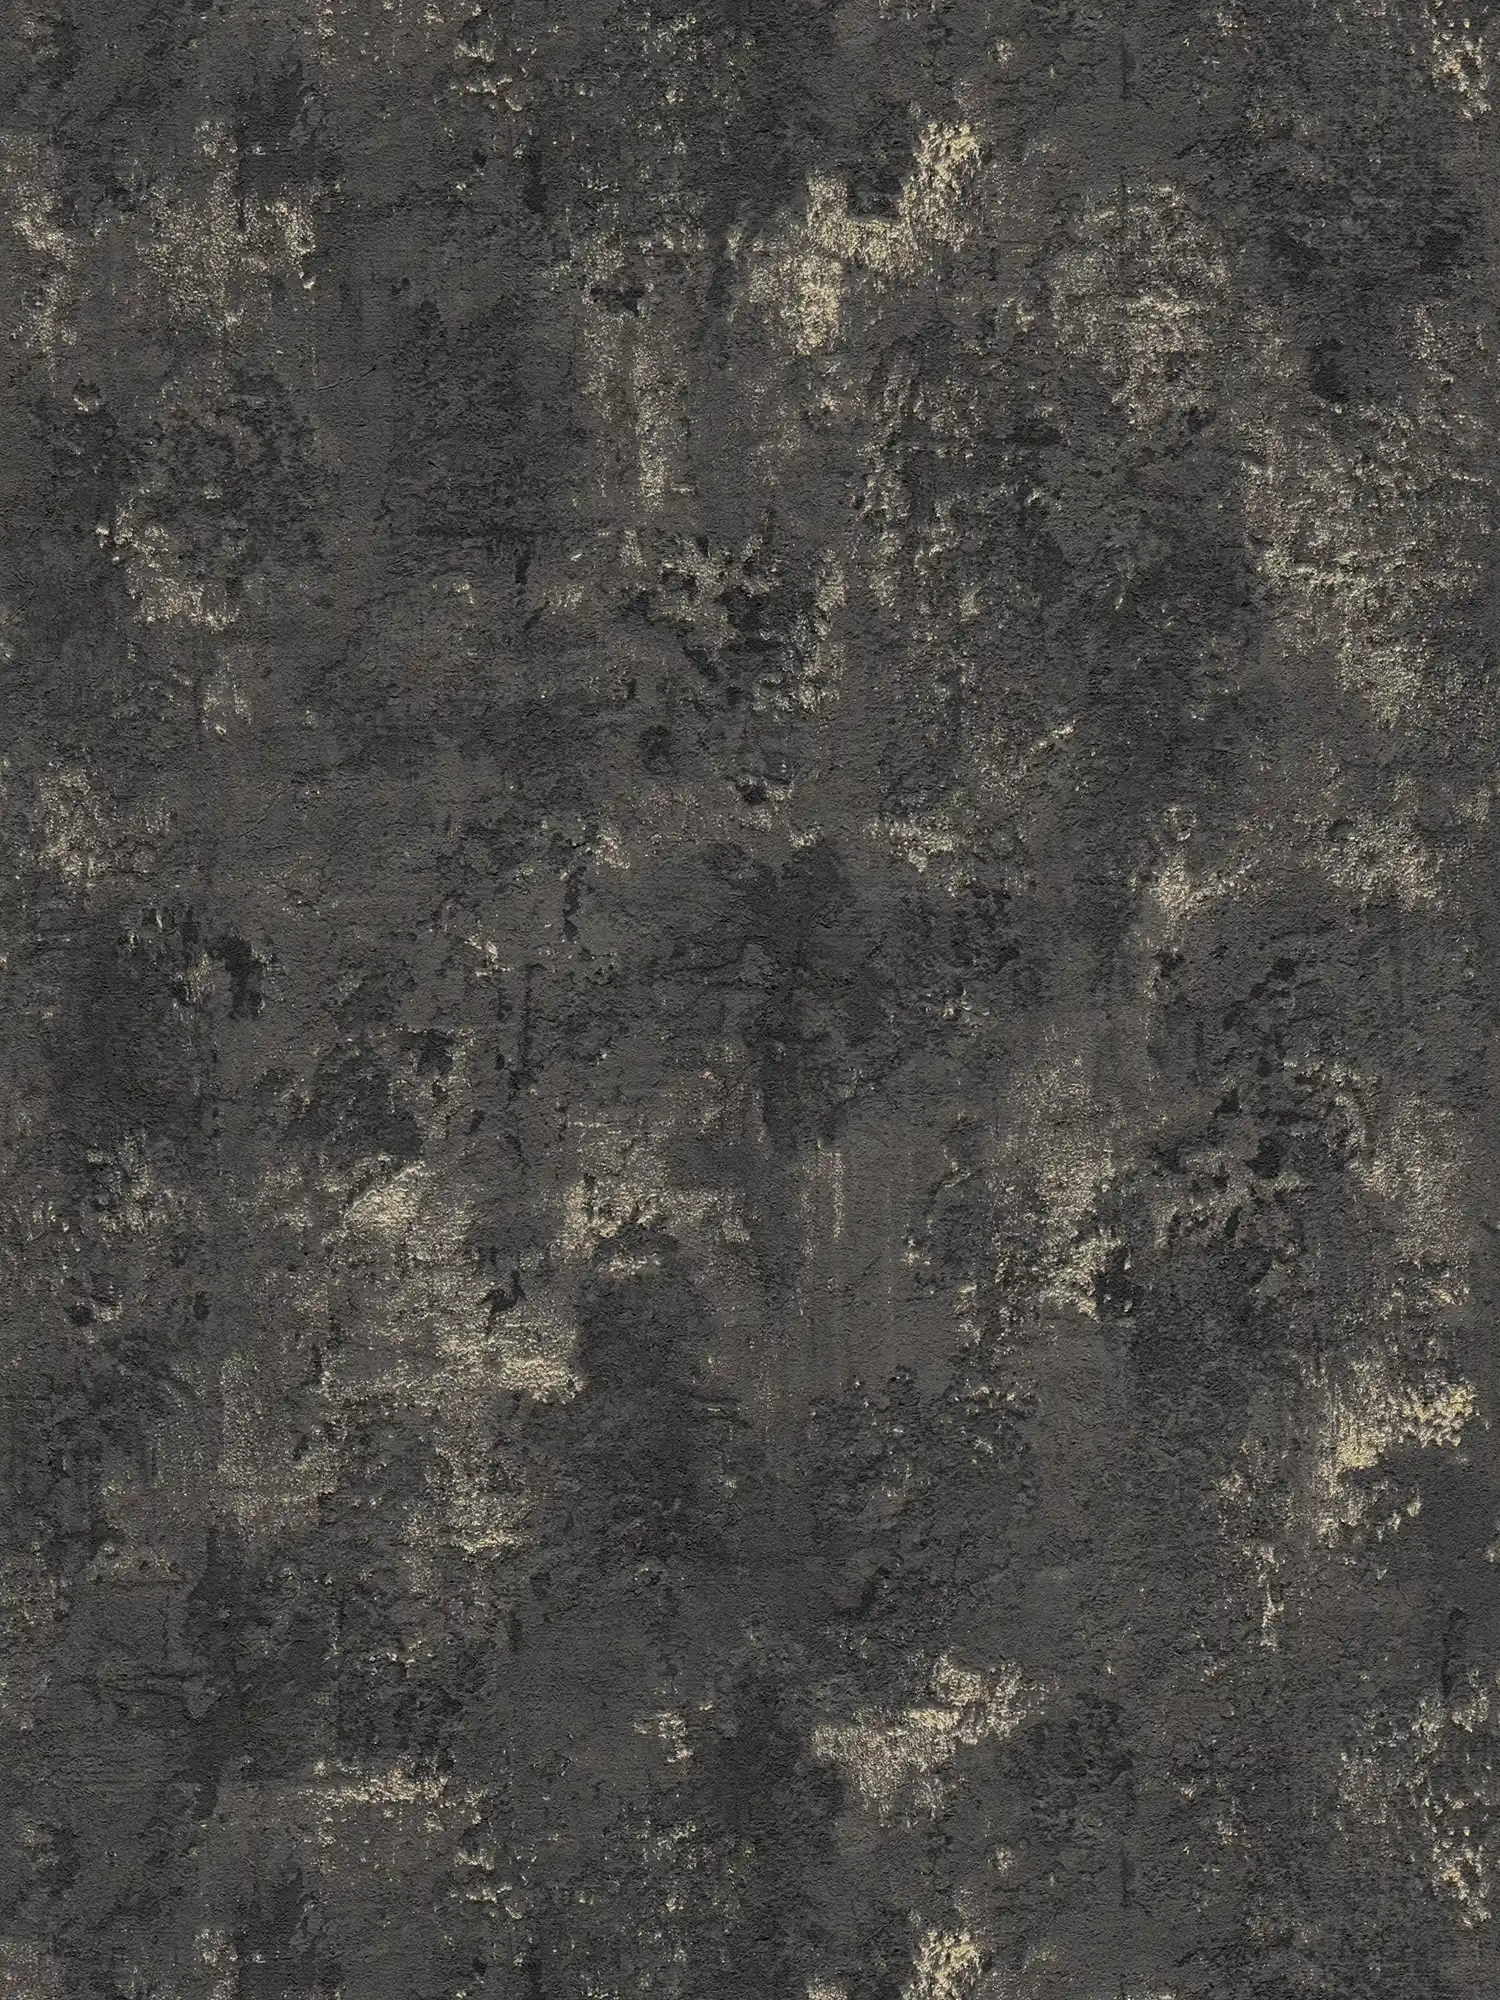 Papier peint noir structuré avec aspect rustique du béton
